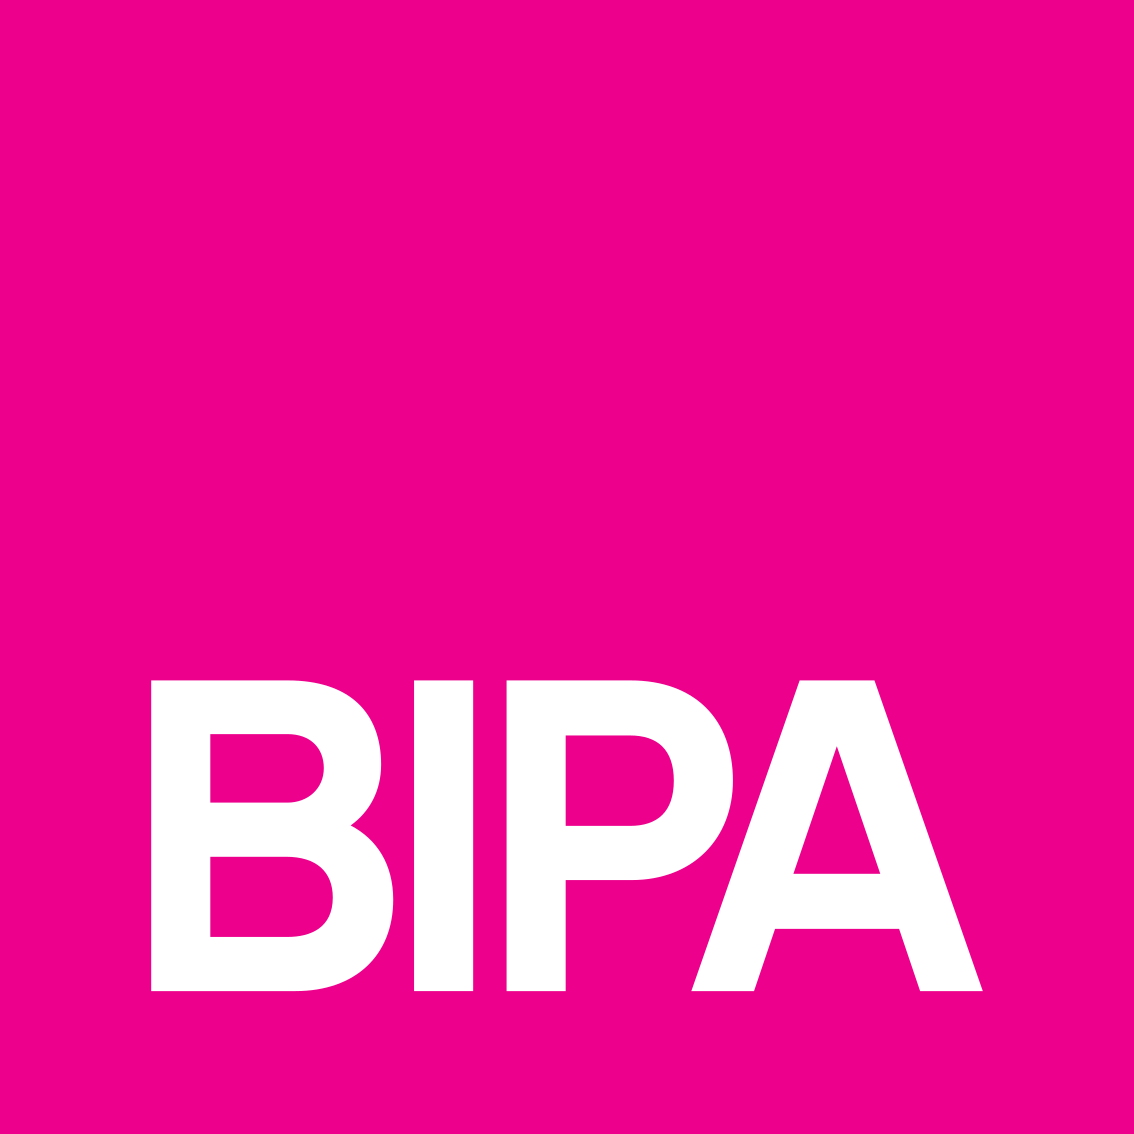 Bipa Logo